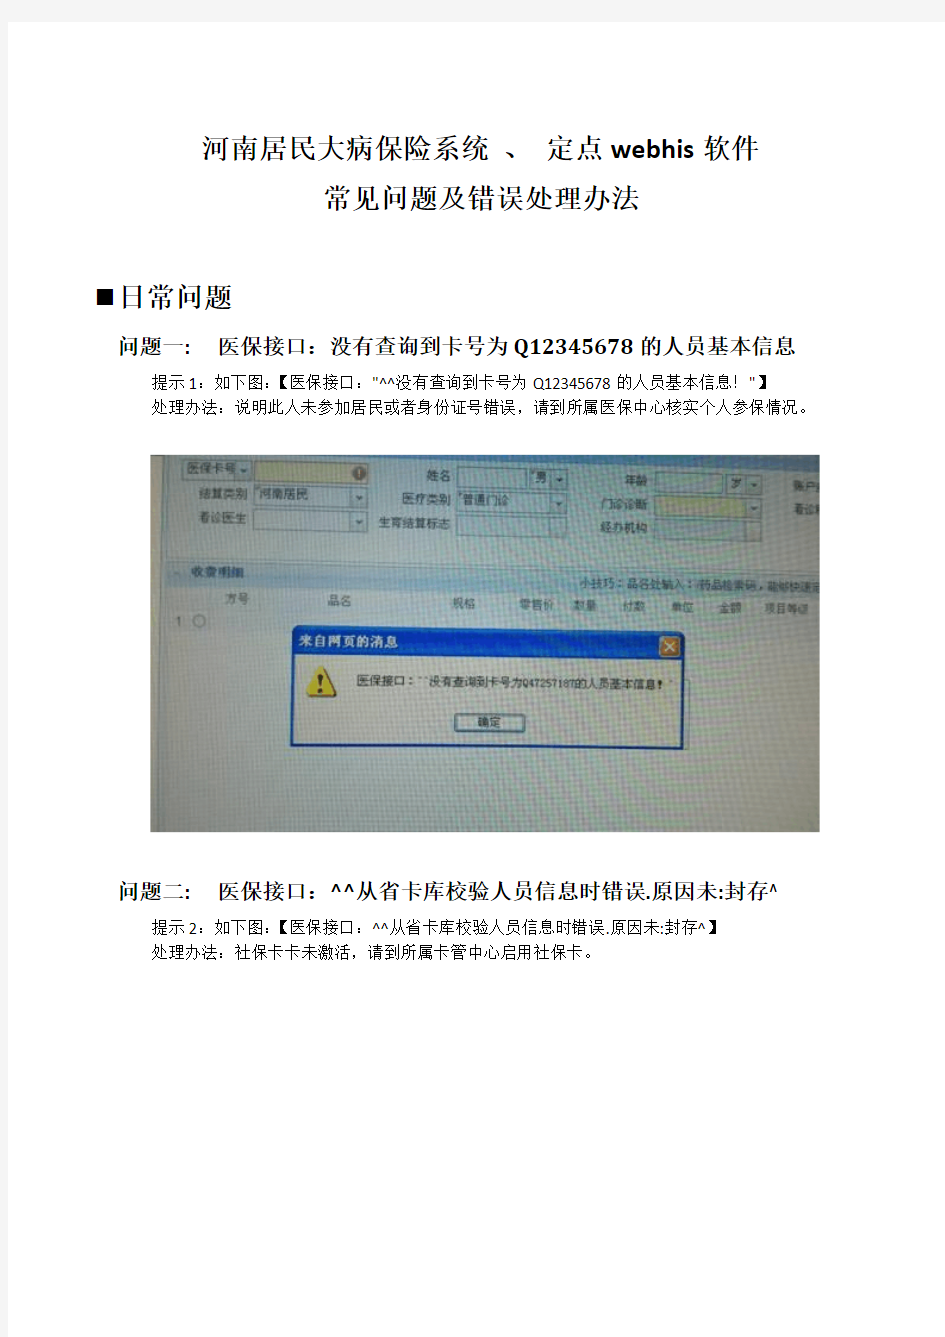 河南省医保收费系统-常见问题及错误处理办法资料